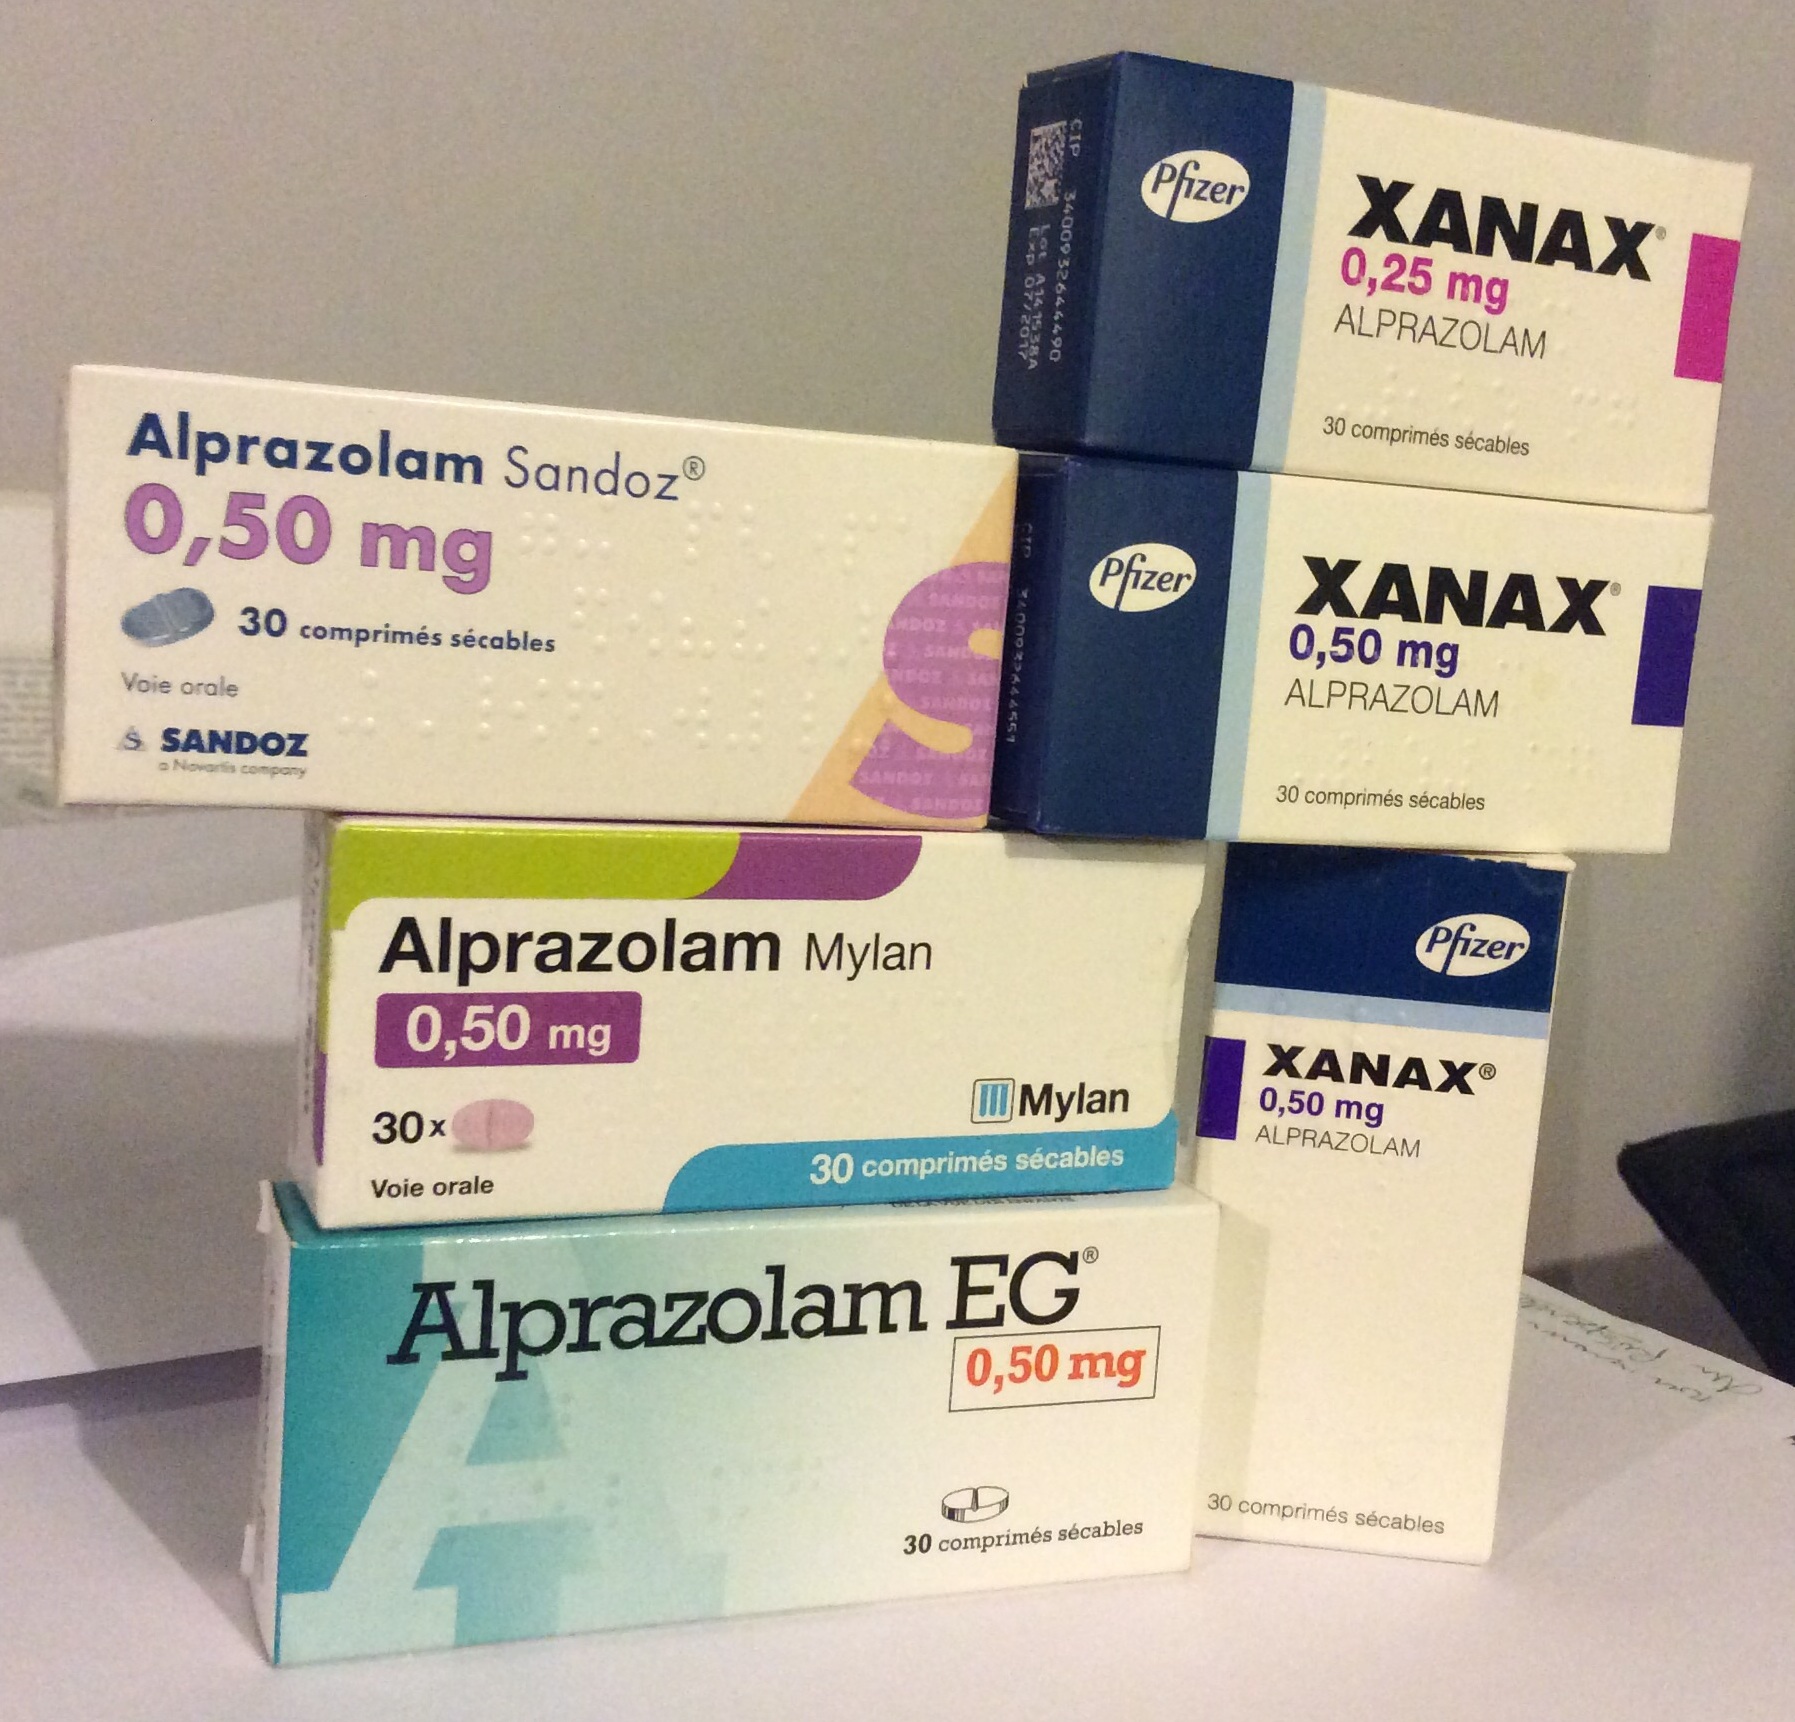 Satılık Xanax Alprazolam Tabletler